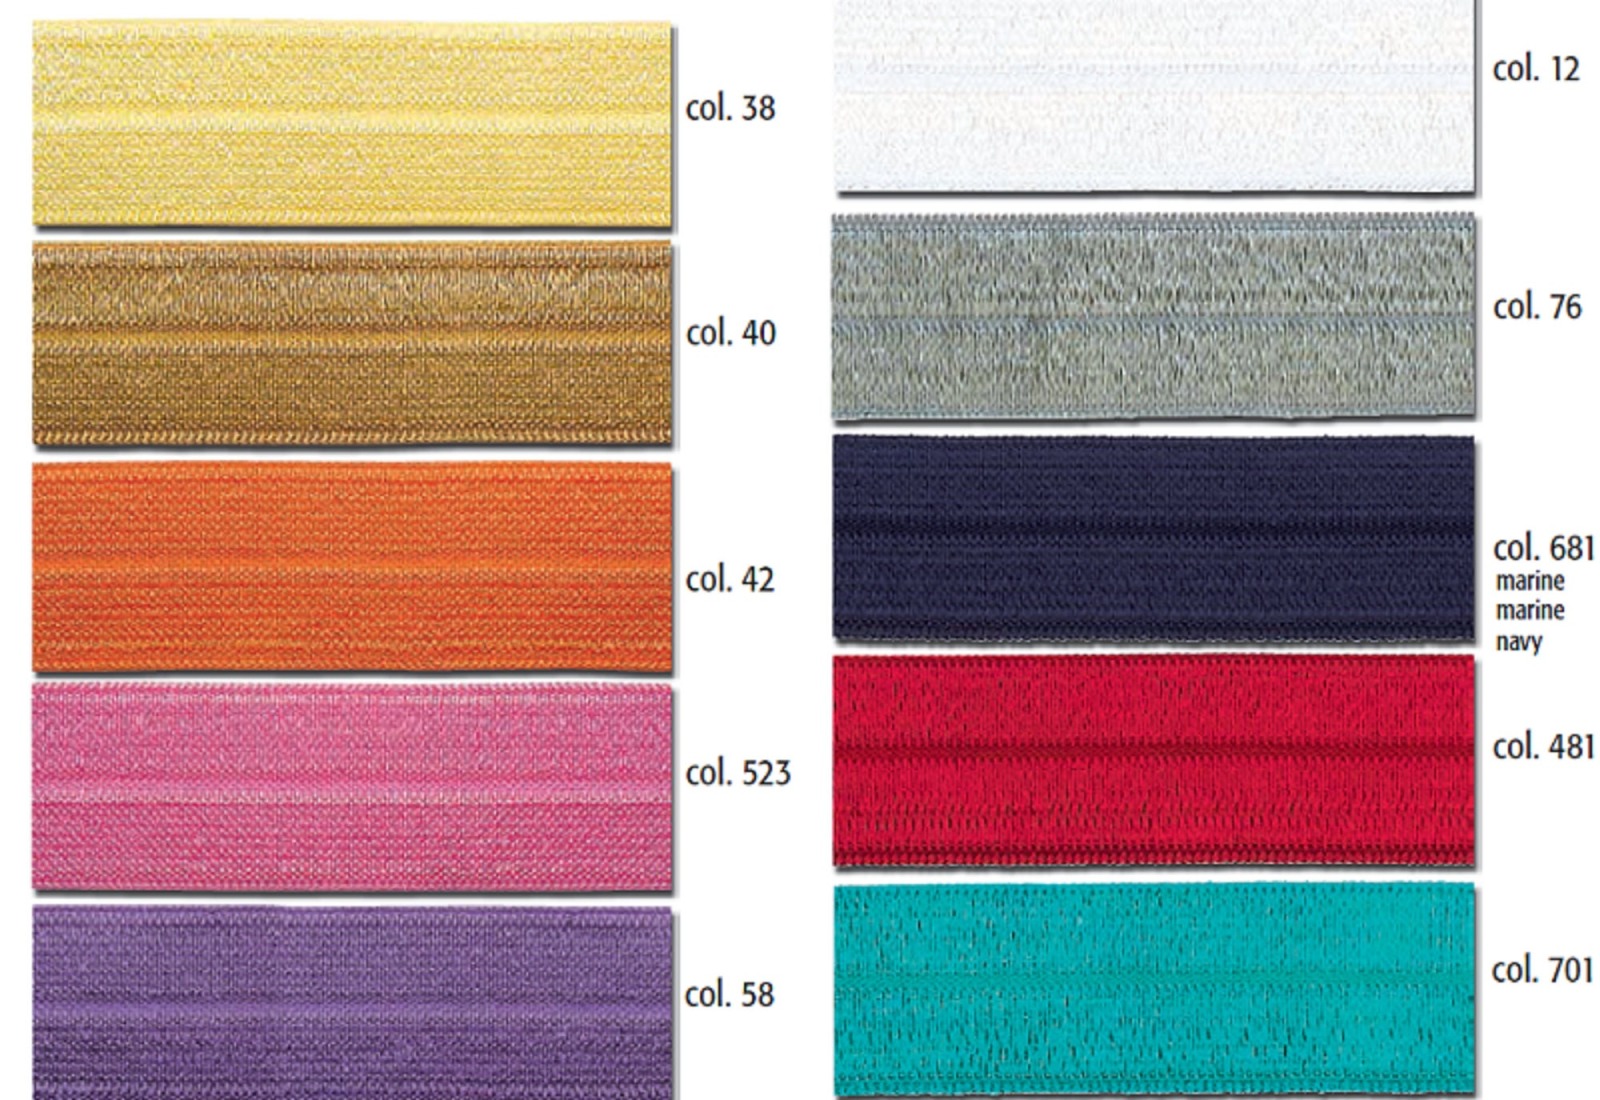 Gummiband für Unterwäsche | Einfaßband elastisch | 20 mm breit | verschiedene Farben 2